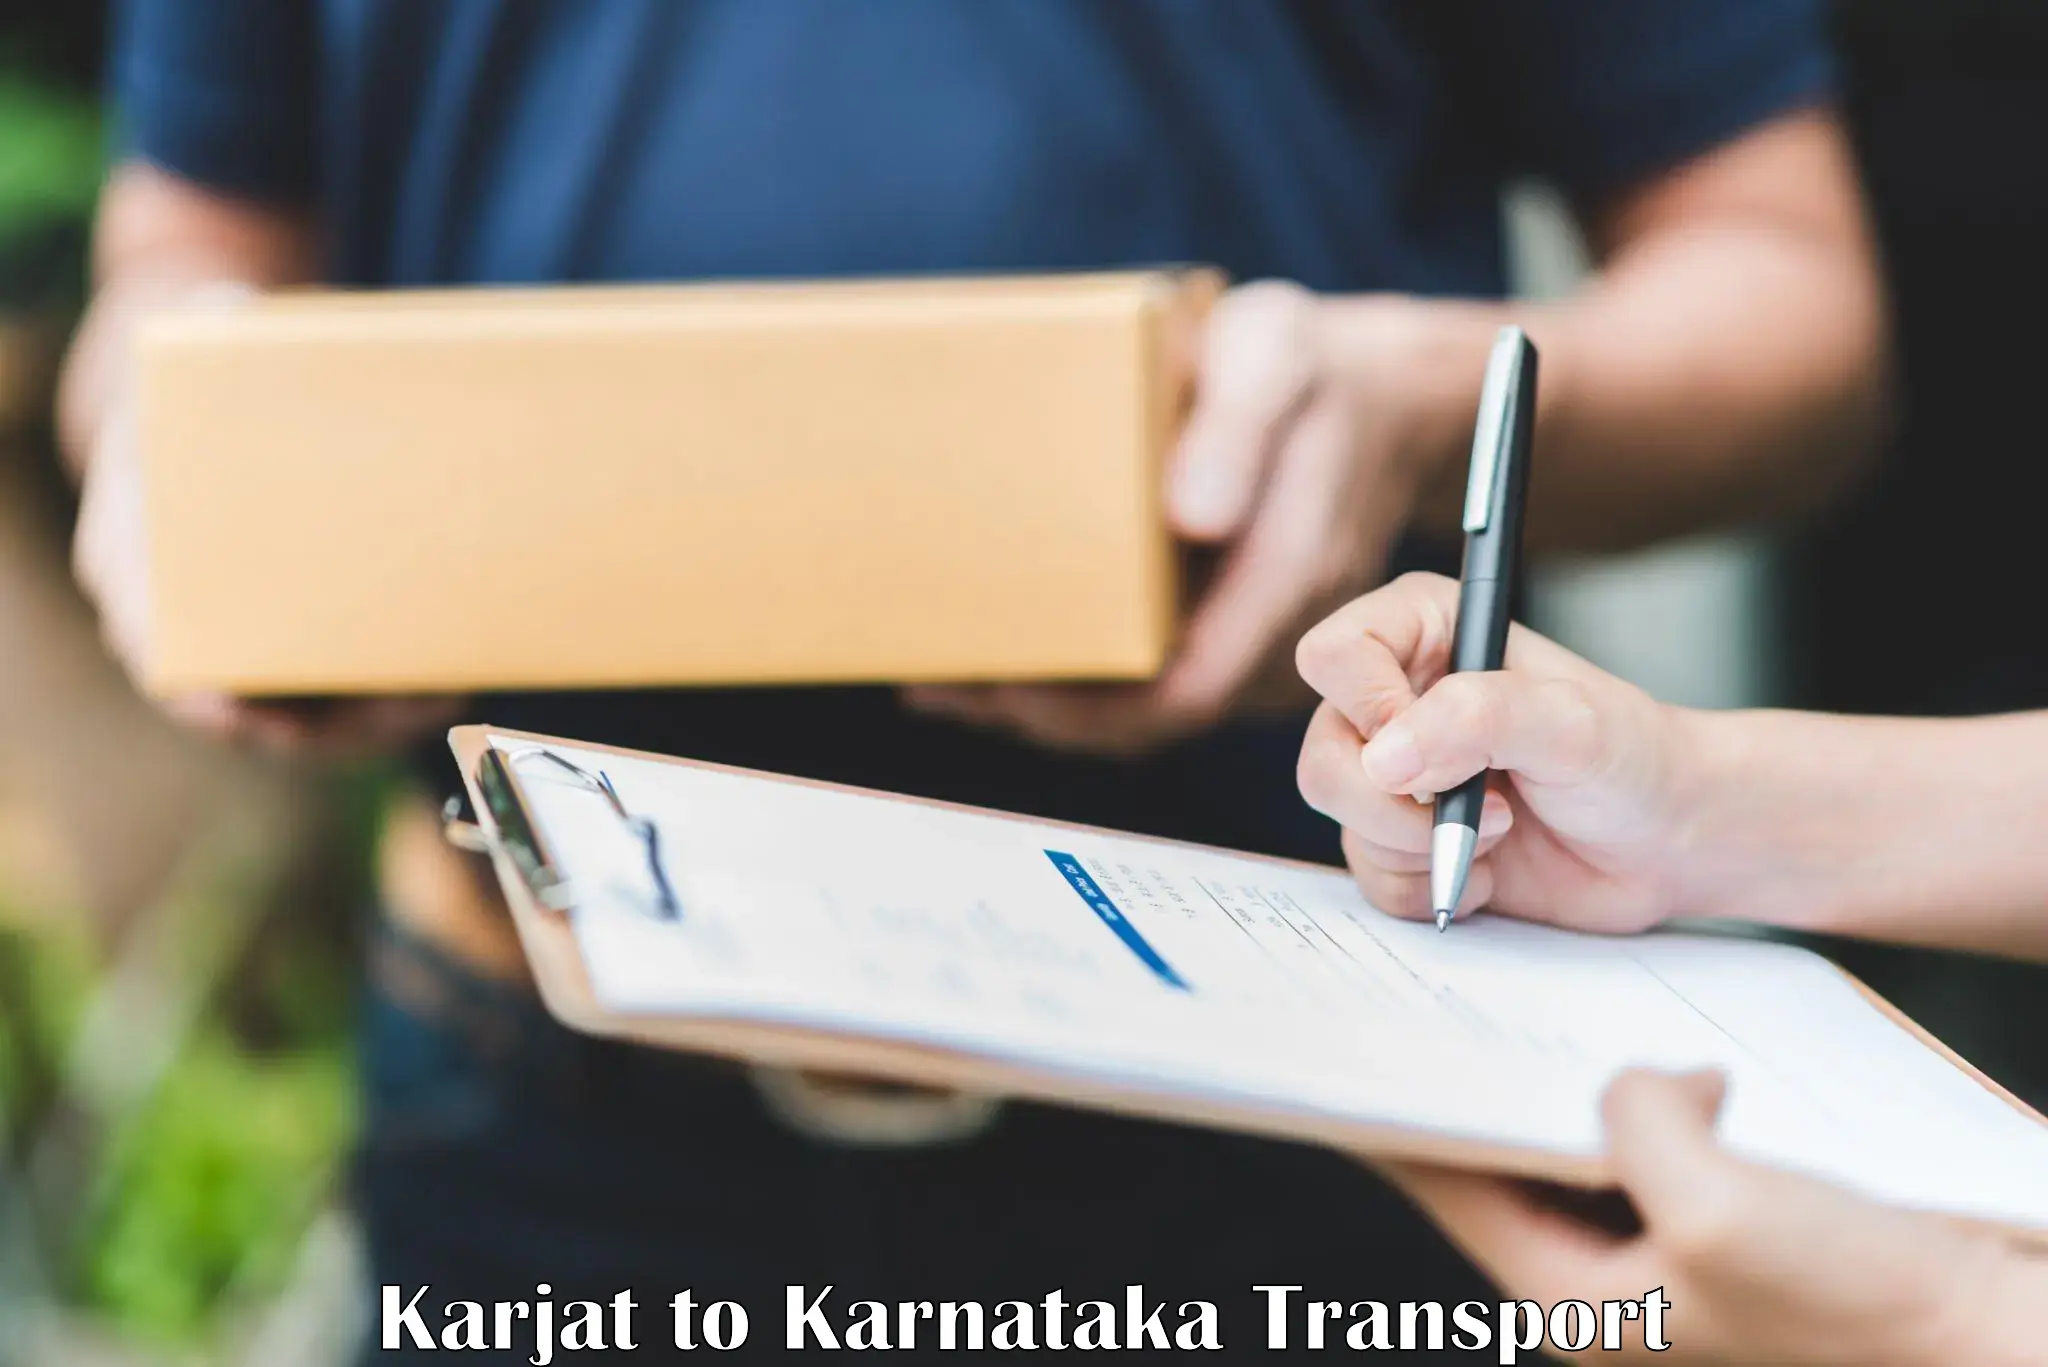 Container transport service Karjat to Udupi